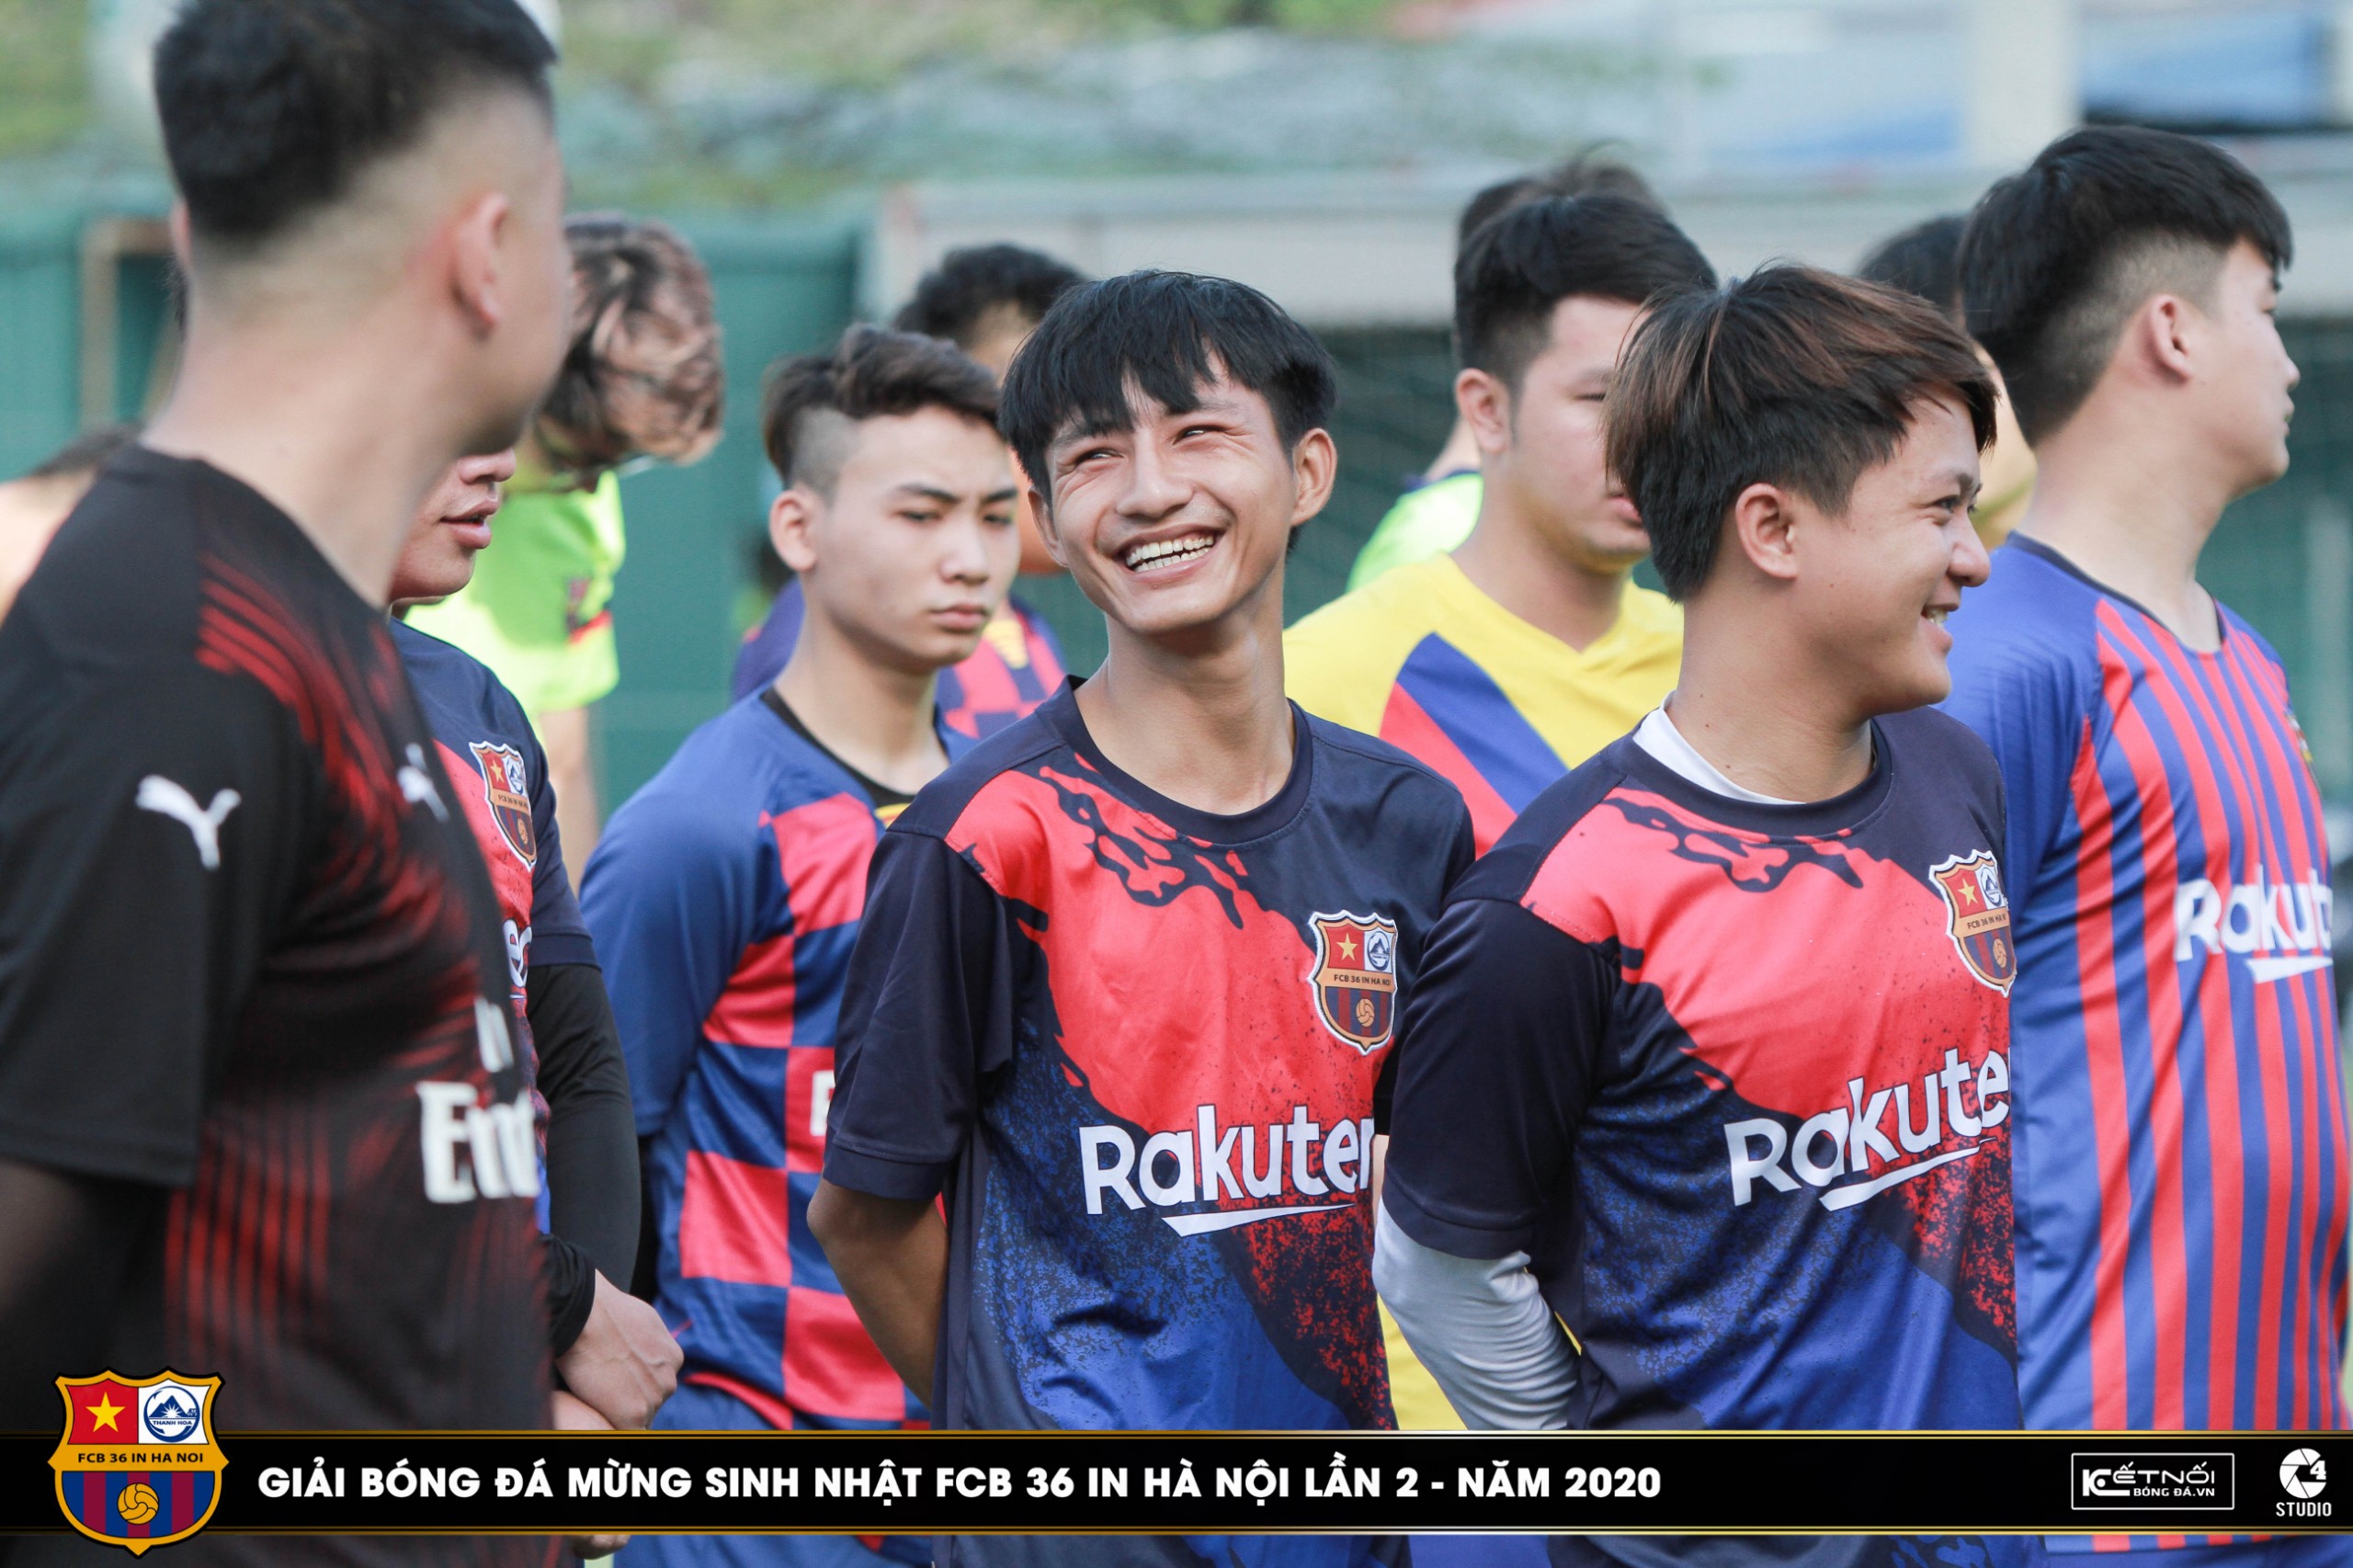 Nụ cười của đội trưởng FCB 36 in Hà Nội với các Barçamania bạn bè trước giải